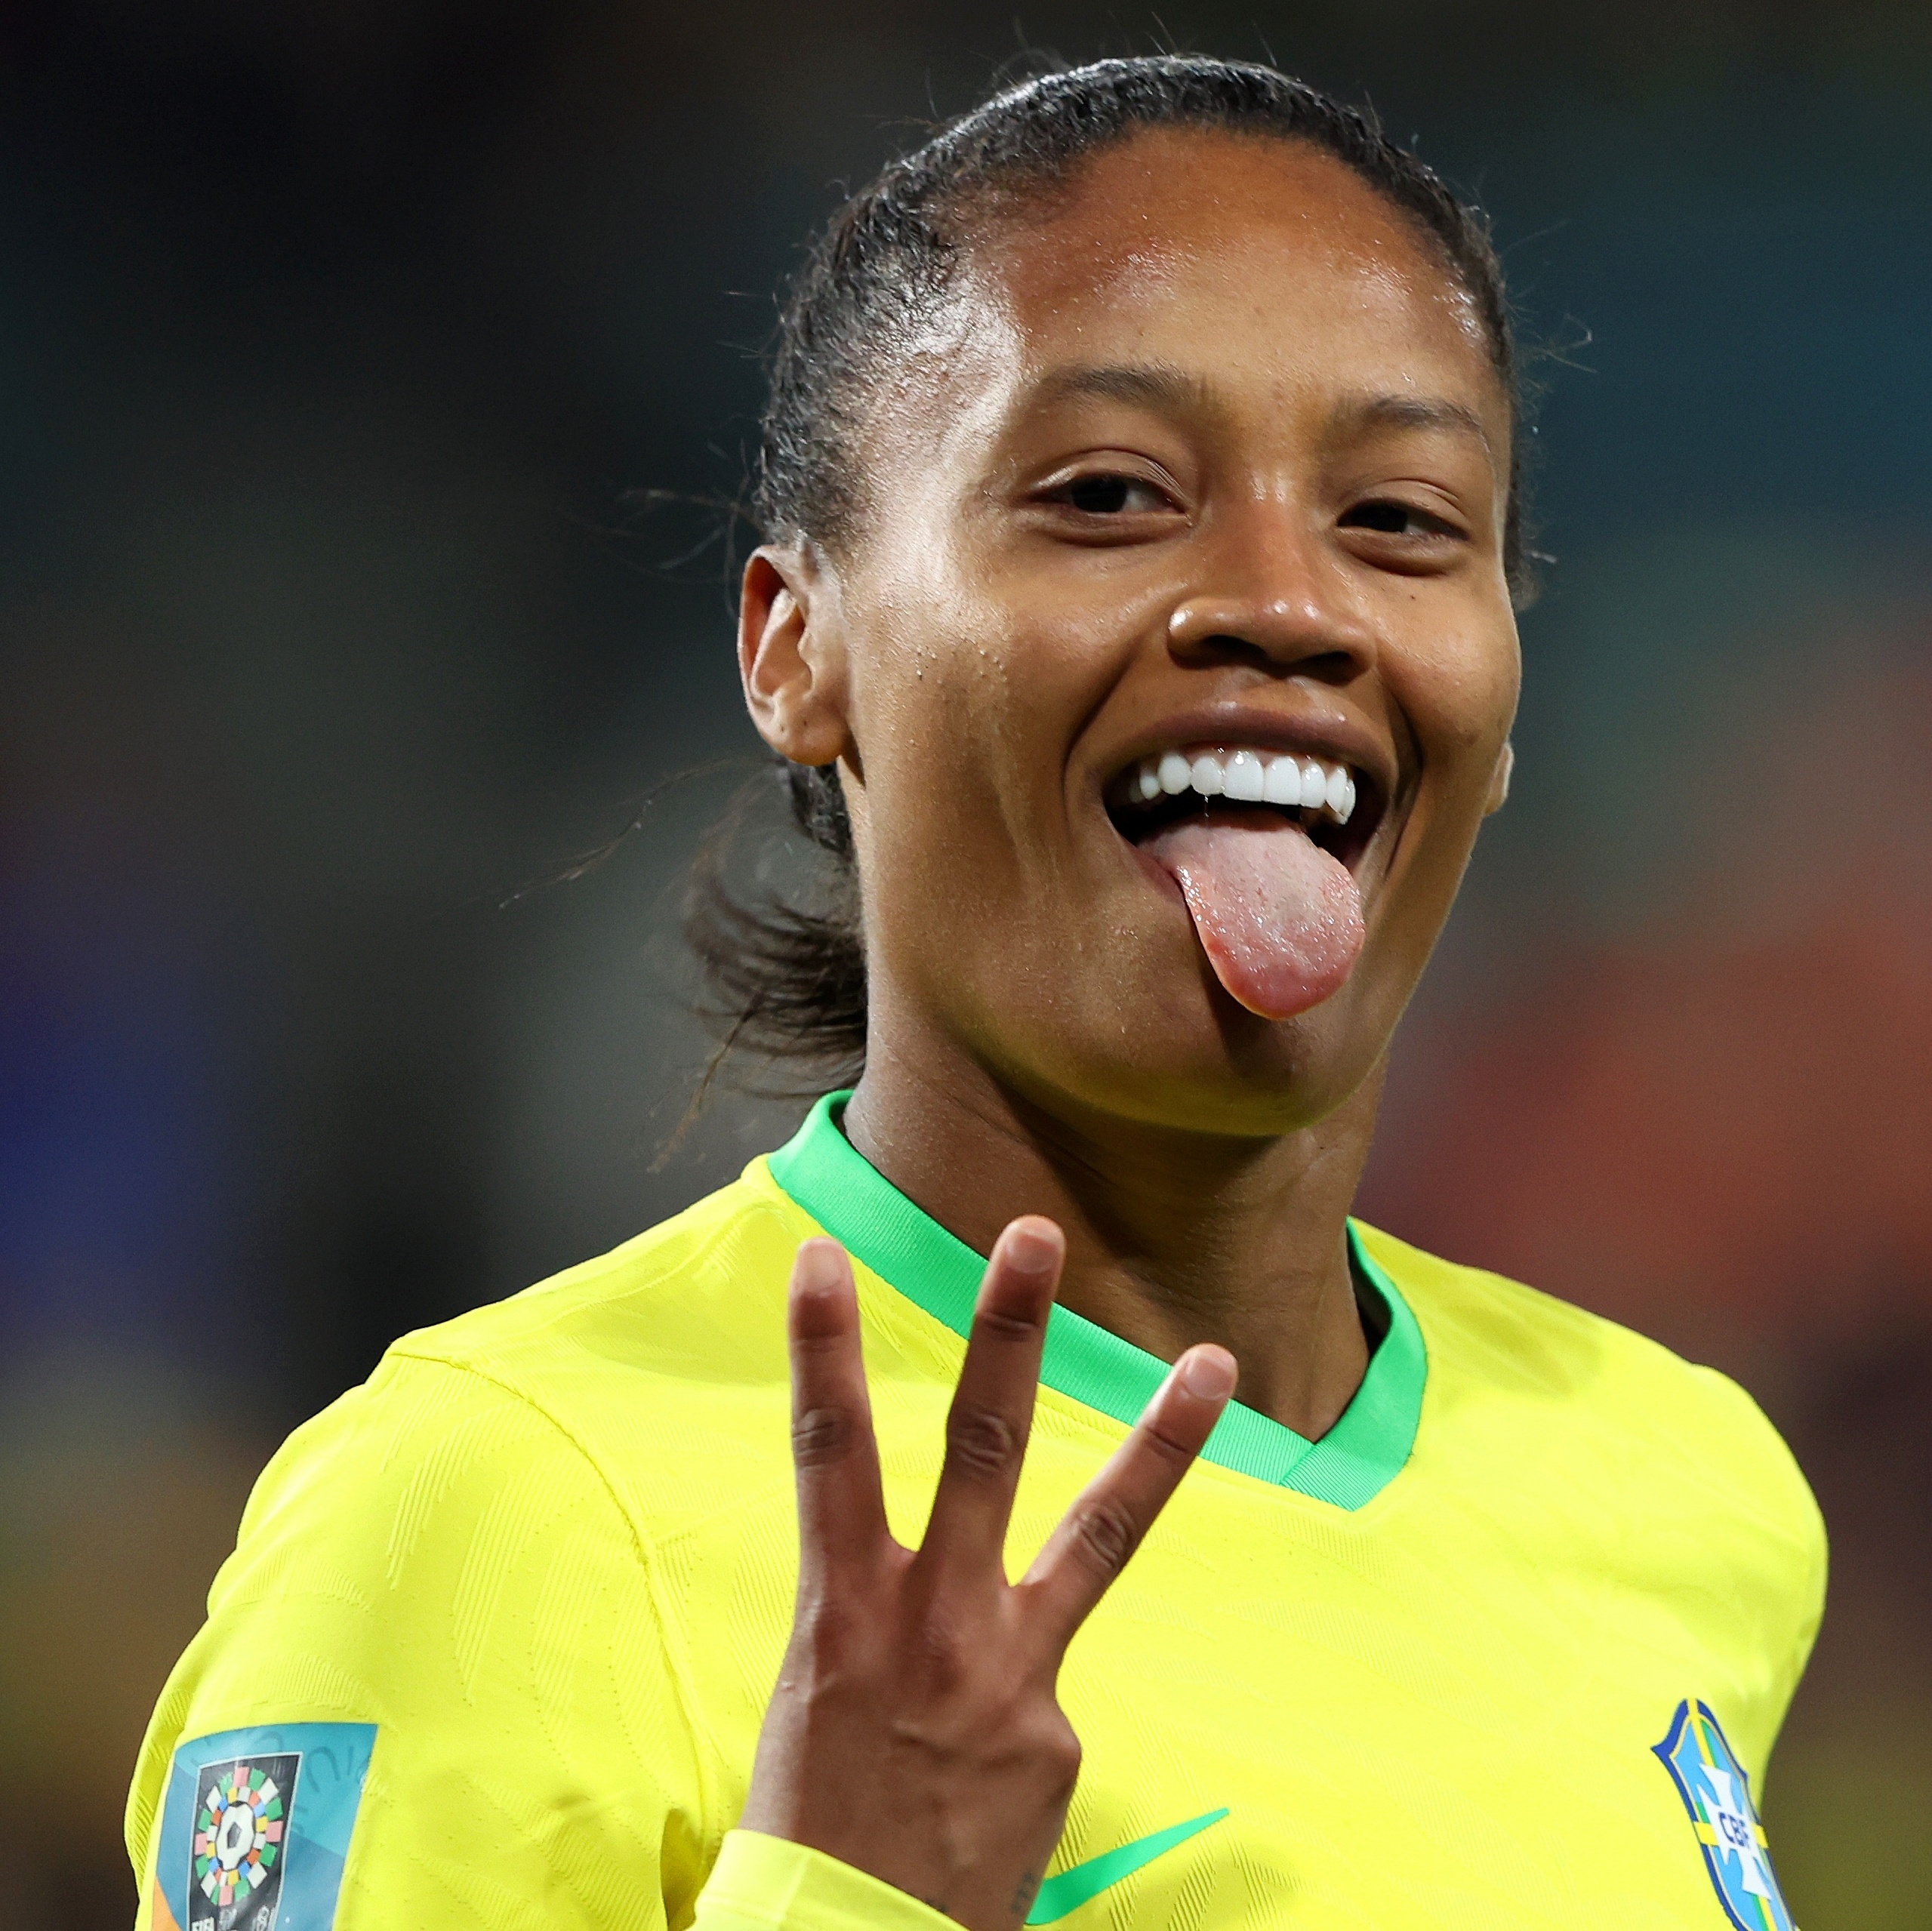 Brasil estreia na Copa do Mundo feminina contra o Panamá